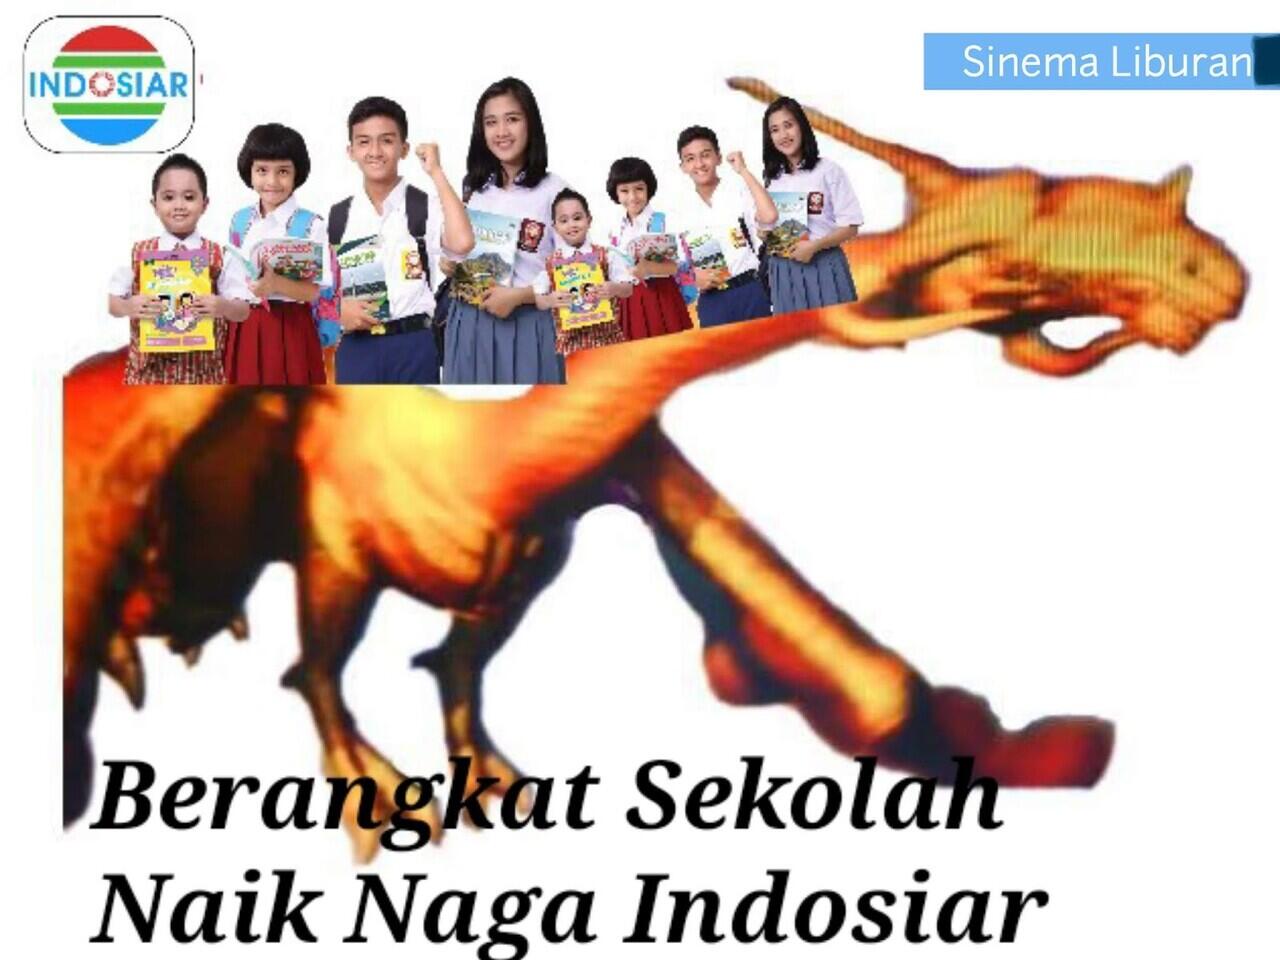 Editan Foto Netizen Naga Naga'an Indosiar Yang Bikin Ngakak